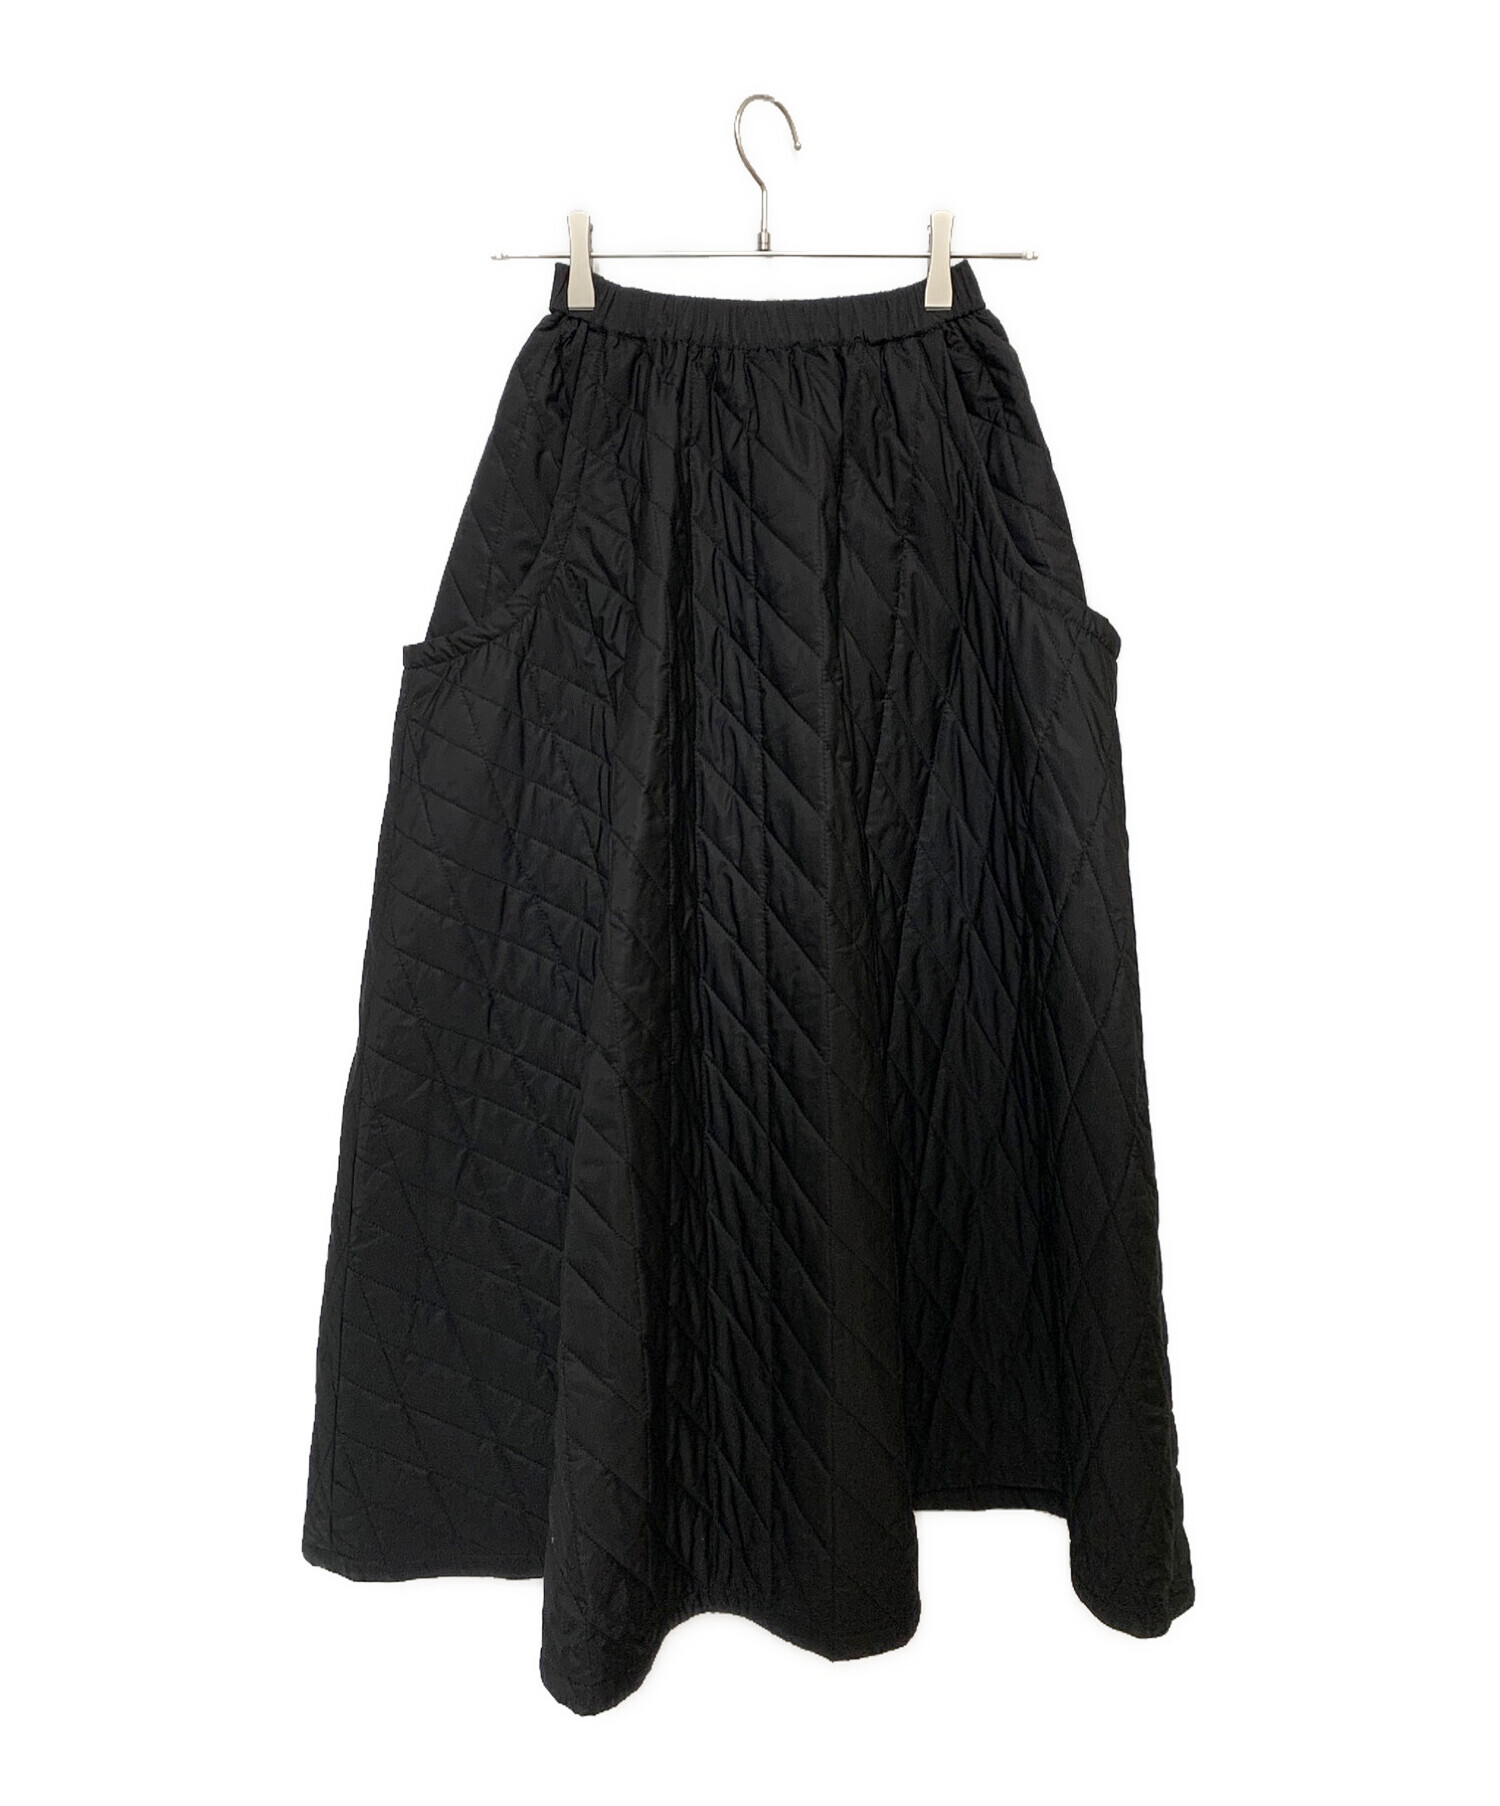 スカートマチャット MACHATT キルティングスカート 黒 - ロングスカート